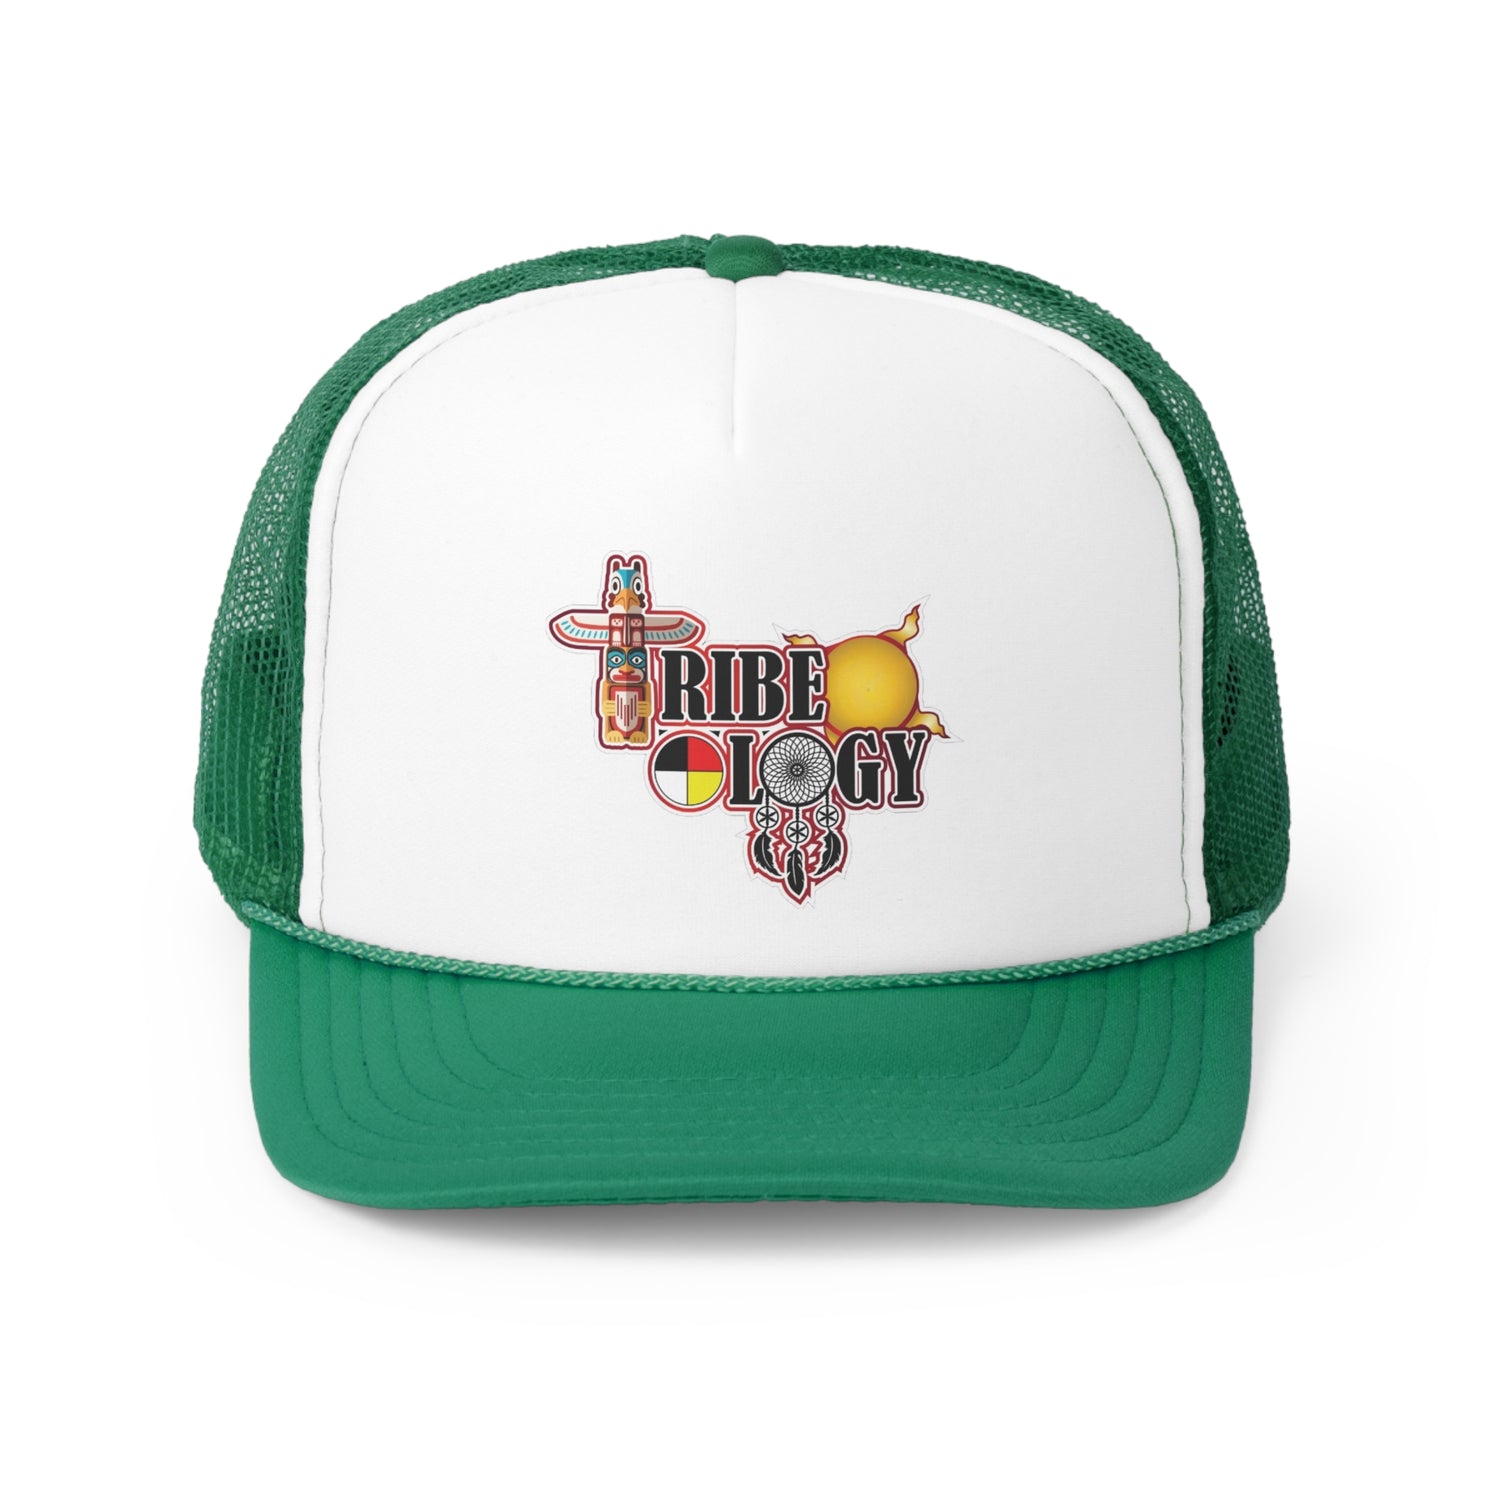 Tribeology Trucker Hat